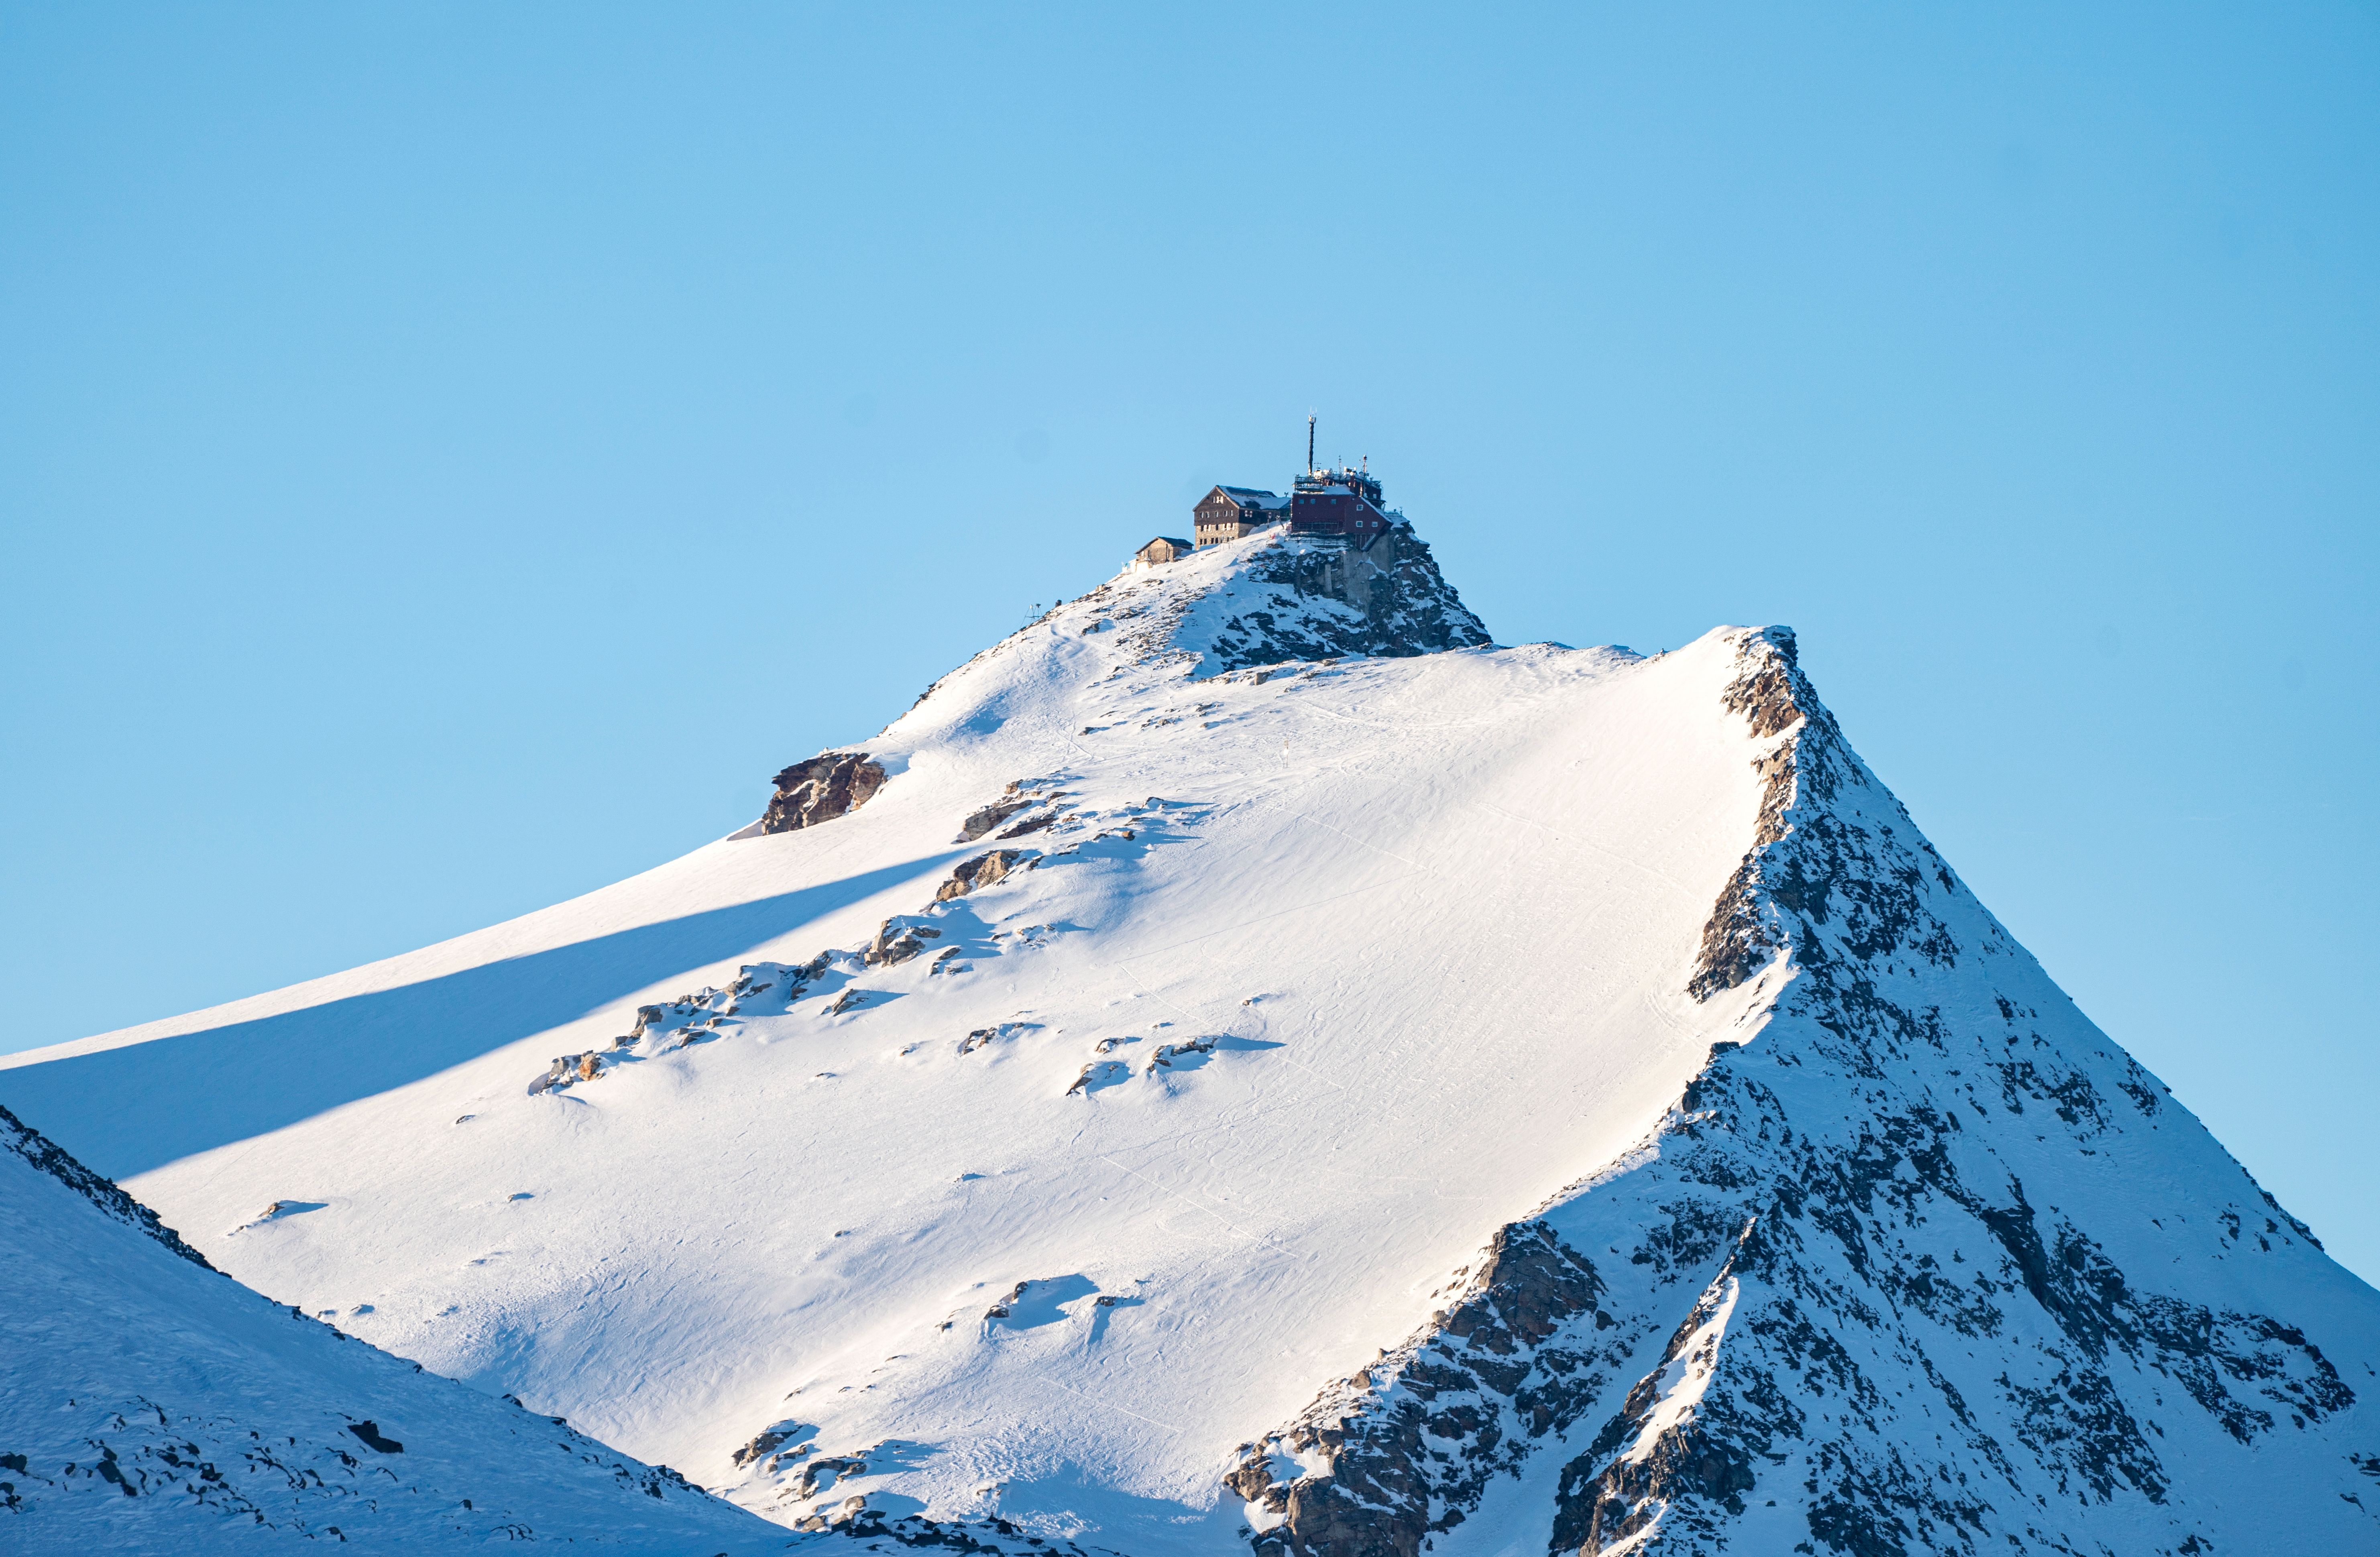 Stevenson leveren Trouw Record sneeuwhoogtes en andere weerrecords uit de Alpen - Wintersport weblog